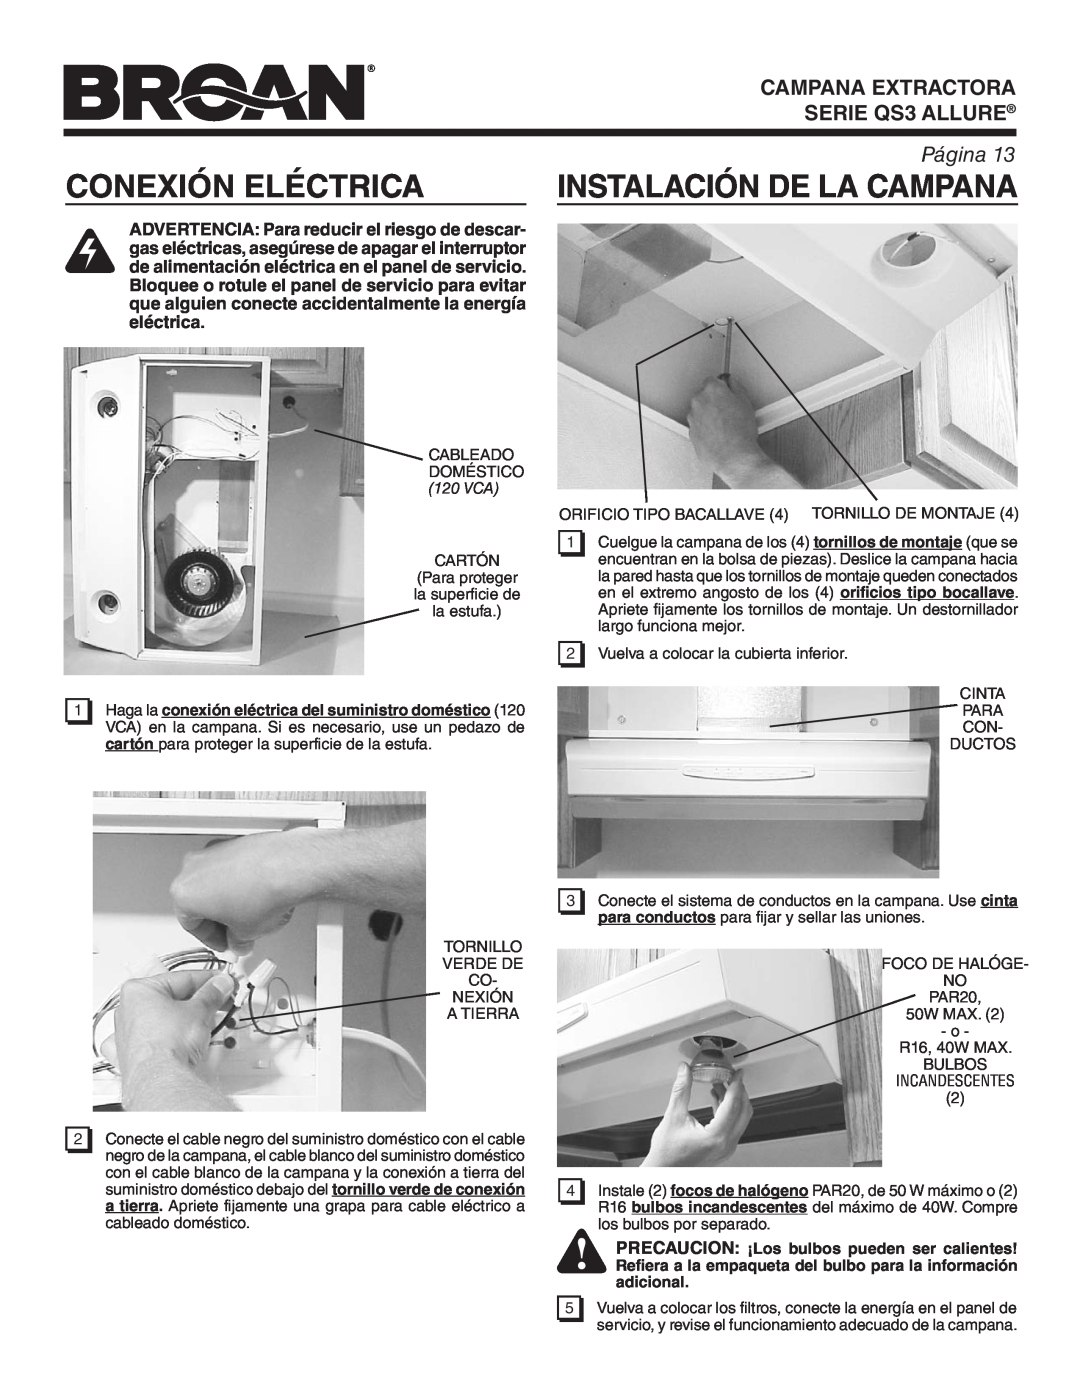 Broan QS330BC Conexión Eléctrica, Instalación De La Campana, PRECAUCION ¡Los bulbos pueden ser calientes, SERIE QS3 ALLURE 